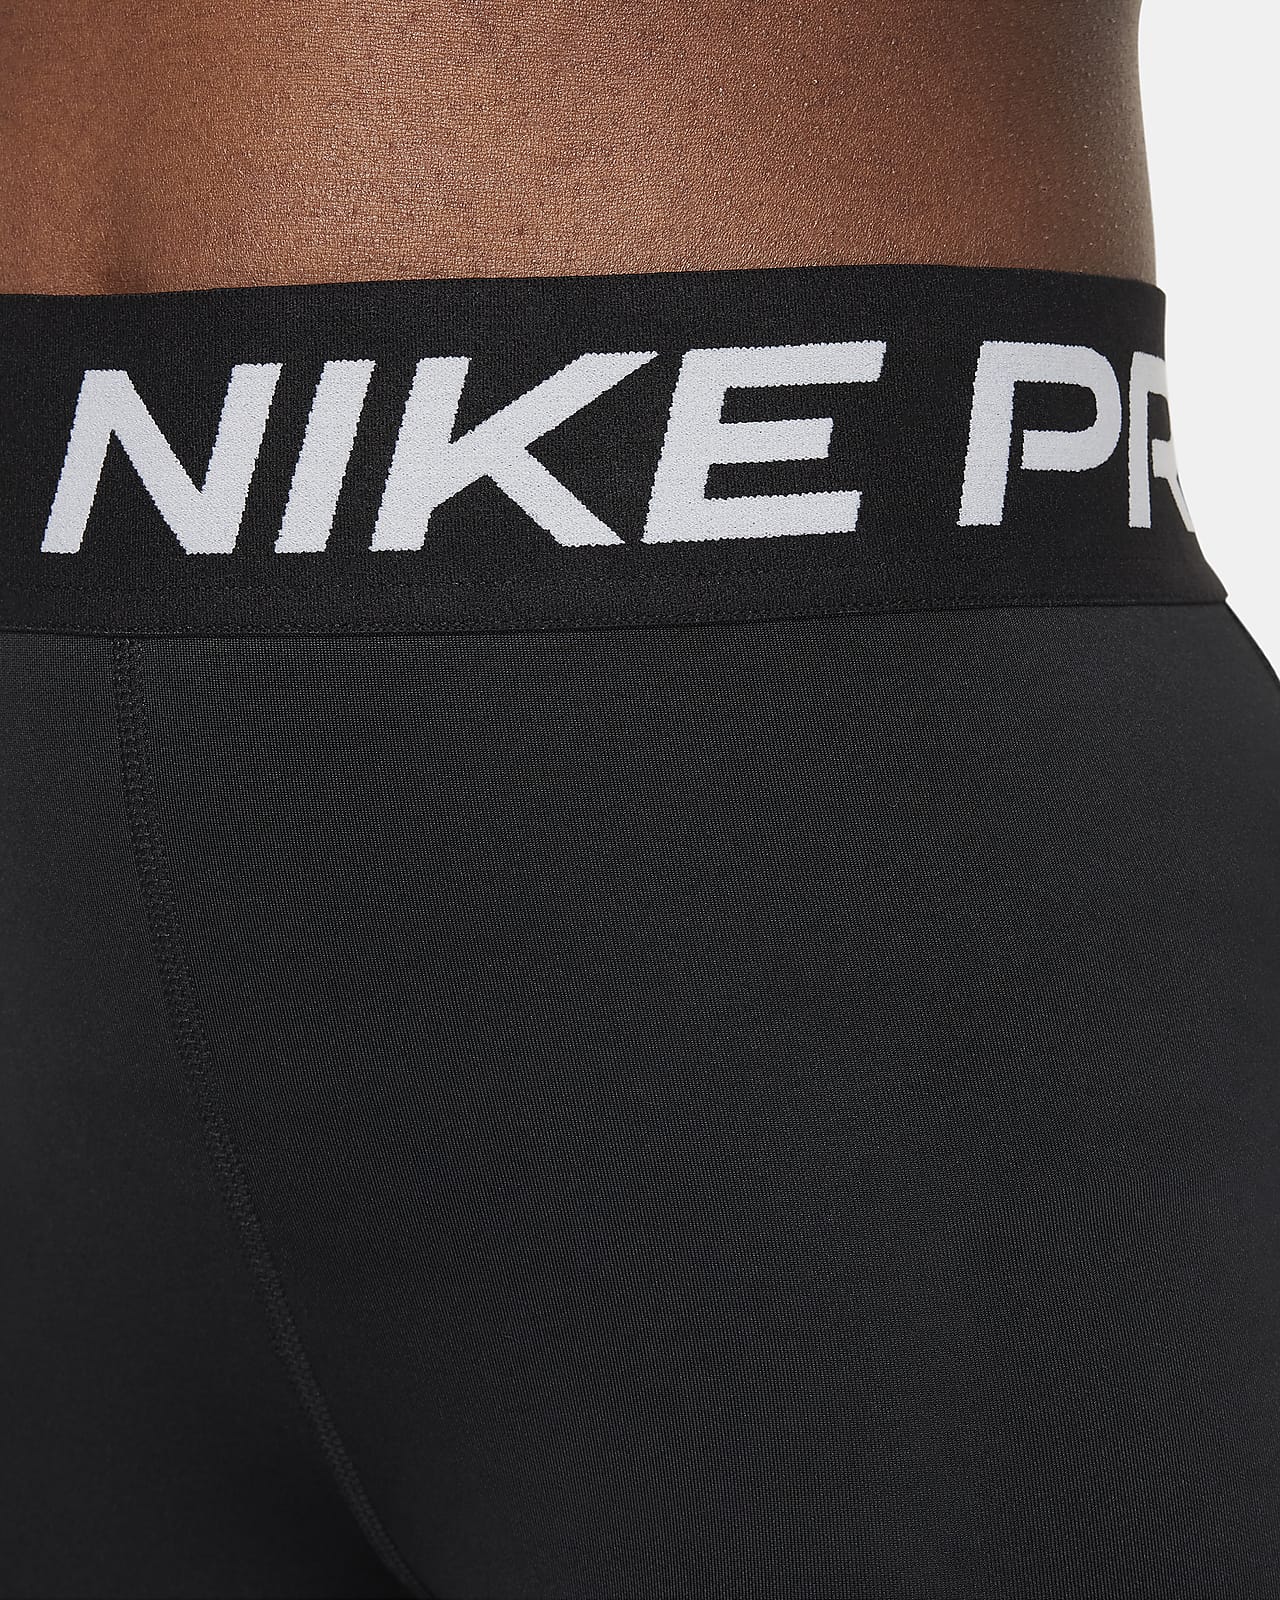 Girls Nike Pro Nike Swoosh Underwear.